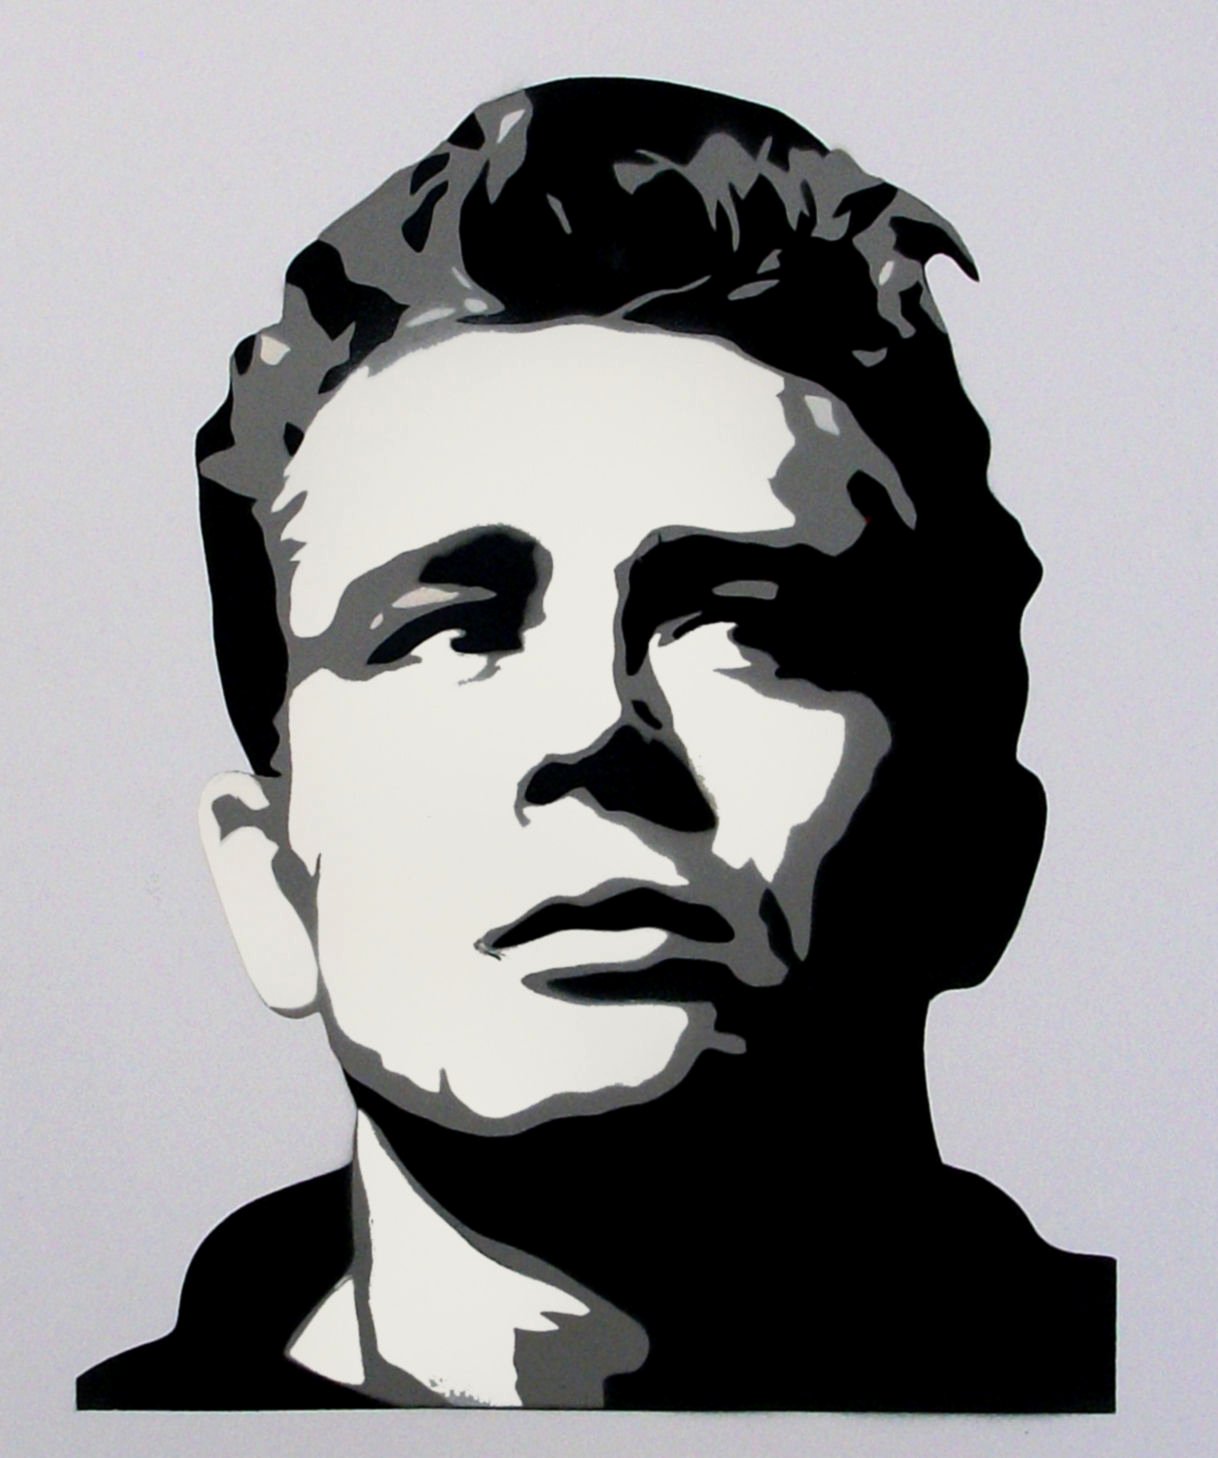 Multi Layer Stencil Art Unique Details About James Dean Retro Portrait Multi Layer